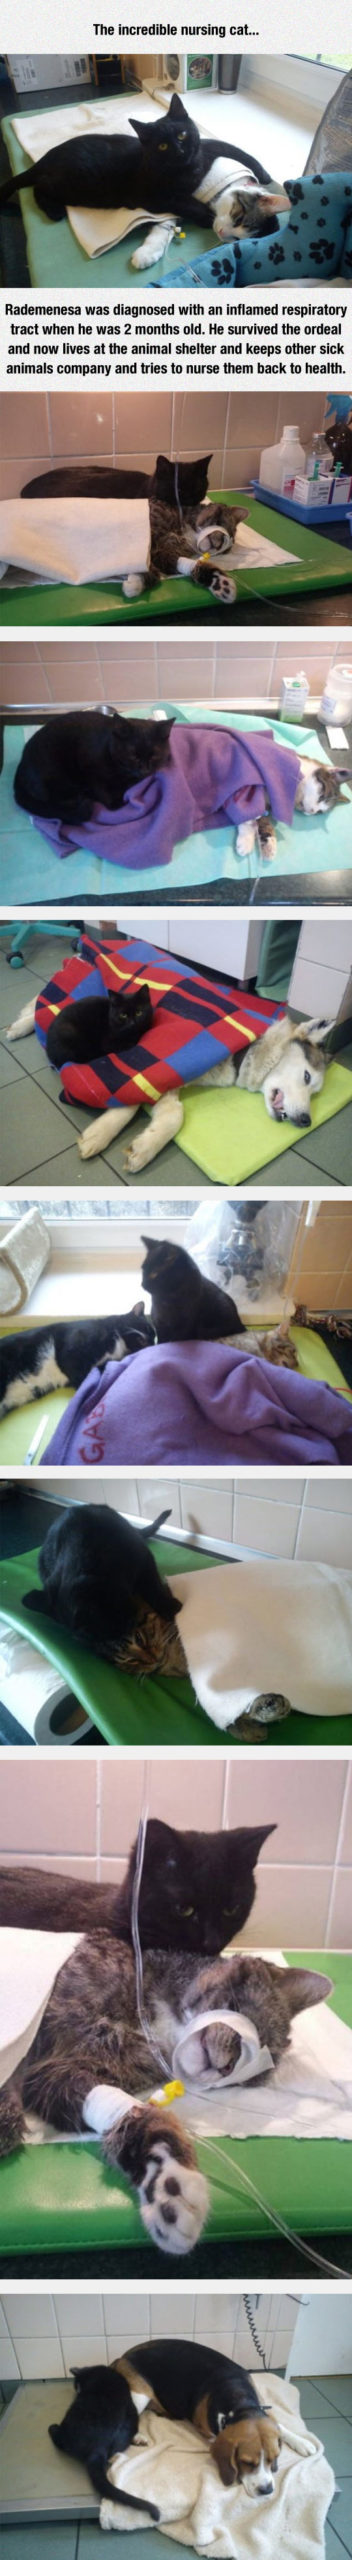 The+Nursing+Cat